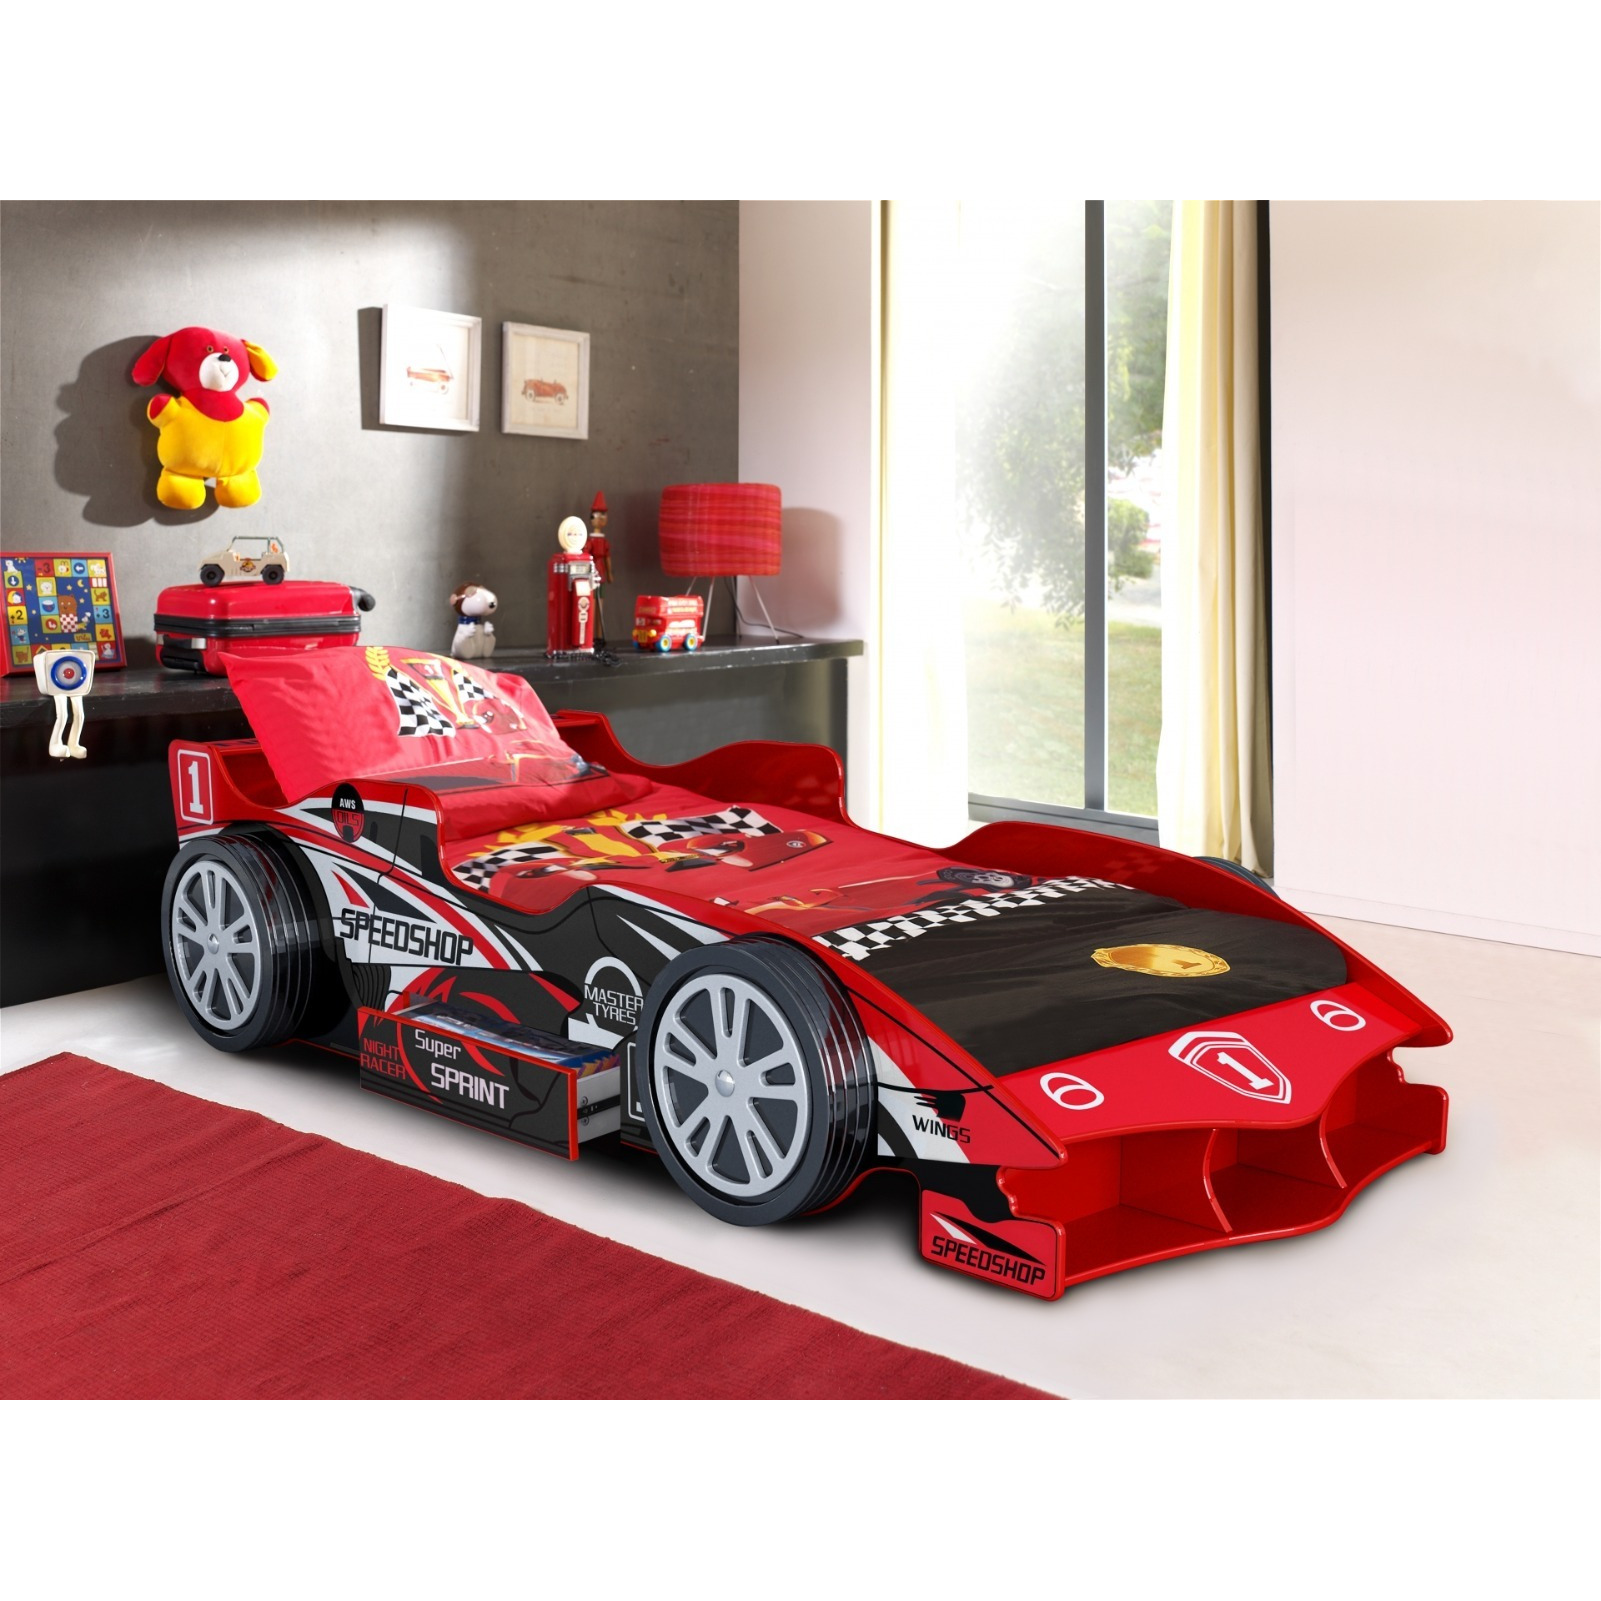 Artisan Speedracer Car Bed Frame Red - image 1